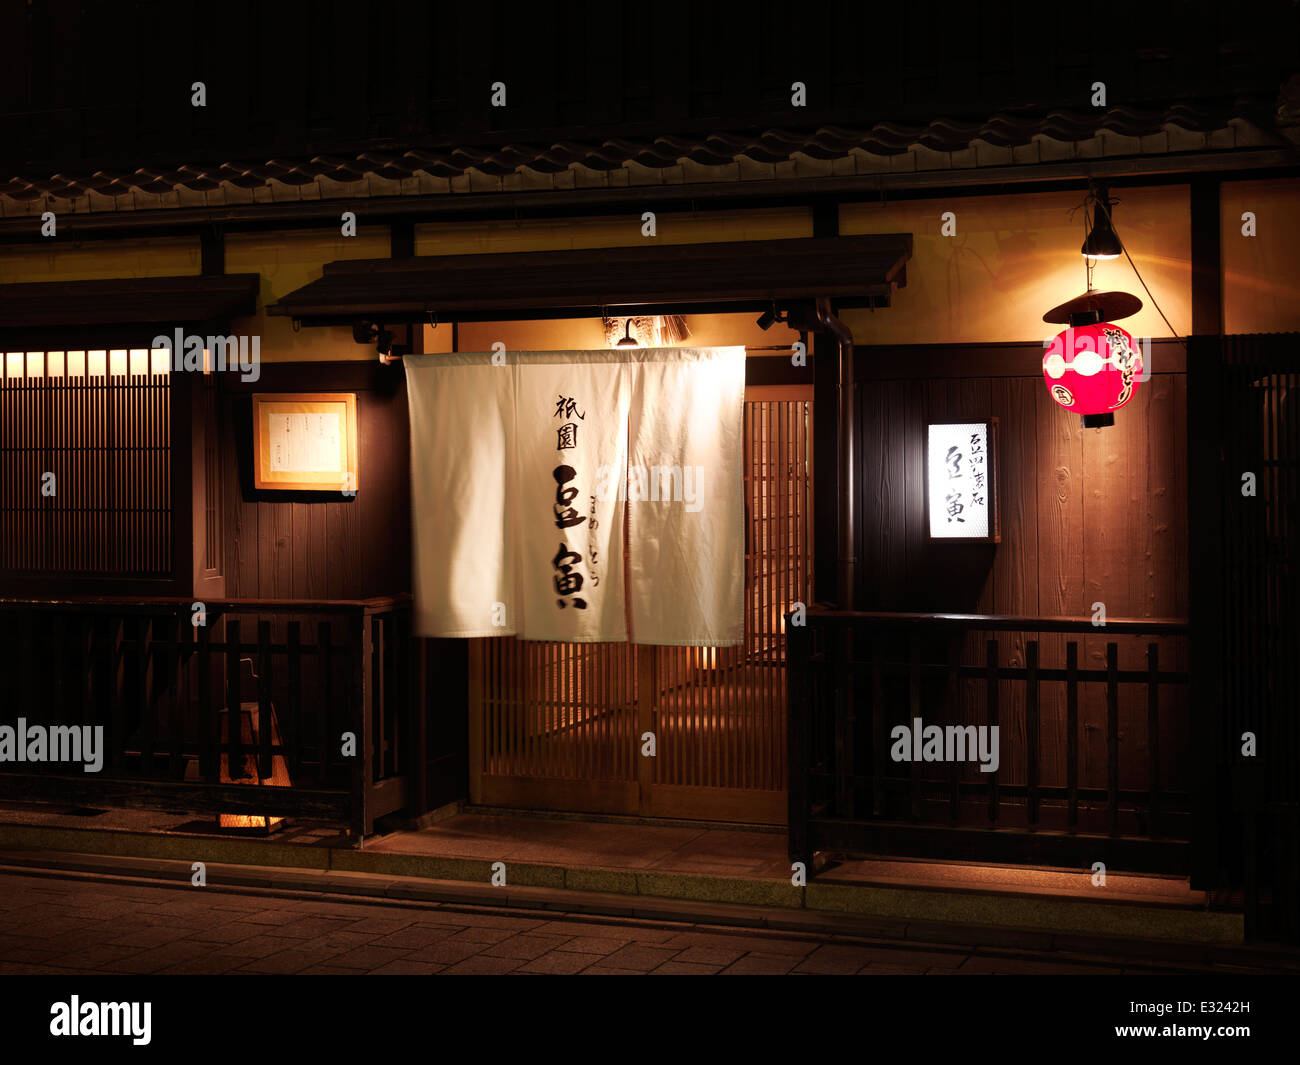 Japanese restaurant at Hanami-koji dori street at night, Hanamikoji geisha district, Gion, Kyoto, Japan Stock Photo